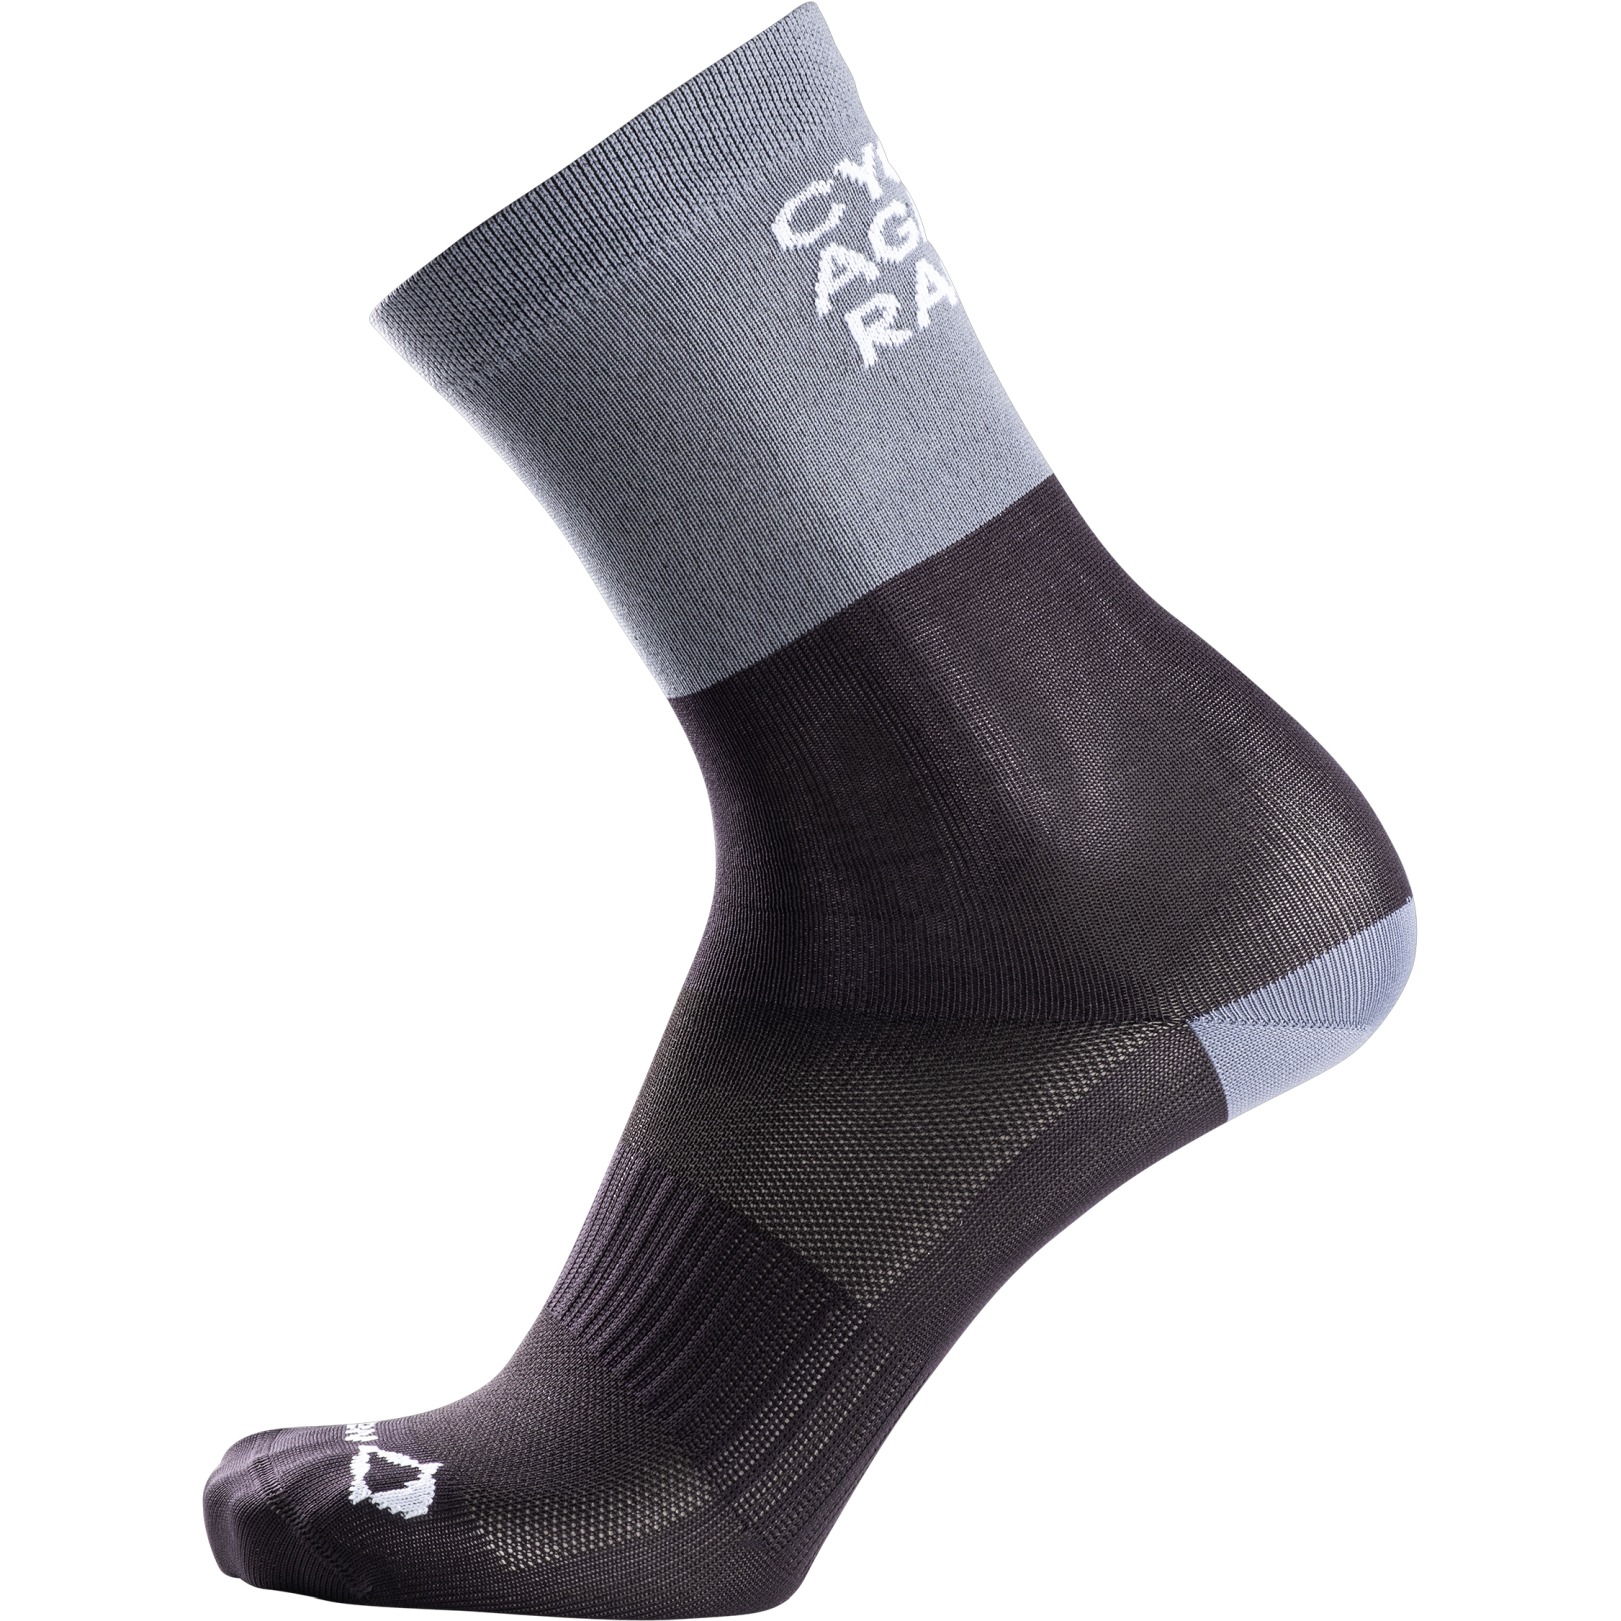 Produktbild von Nalini New Funny Socken - schwarz/grau 4010